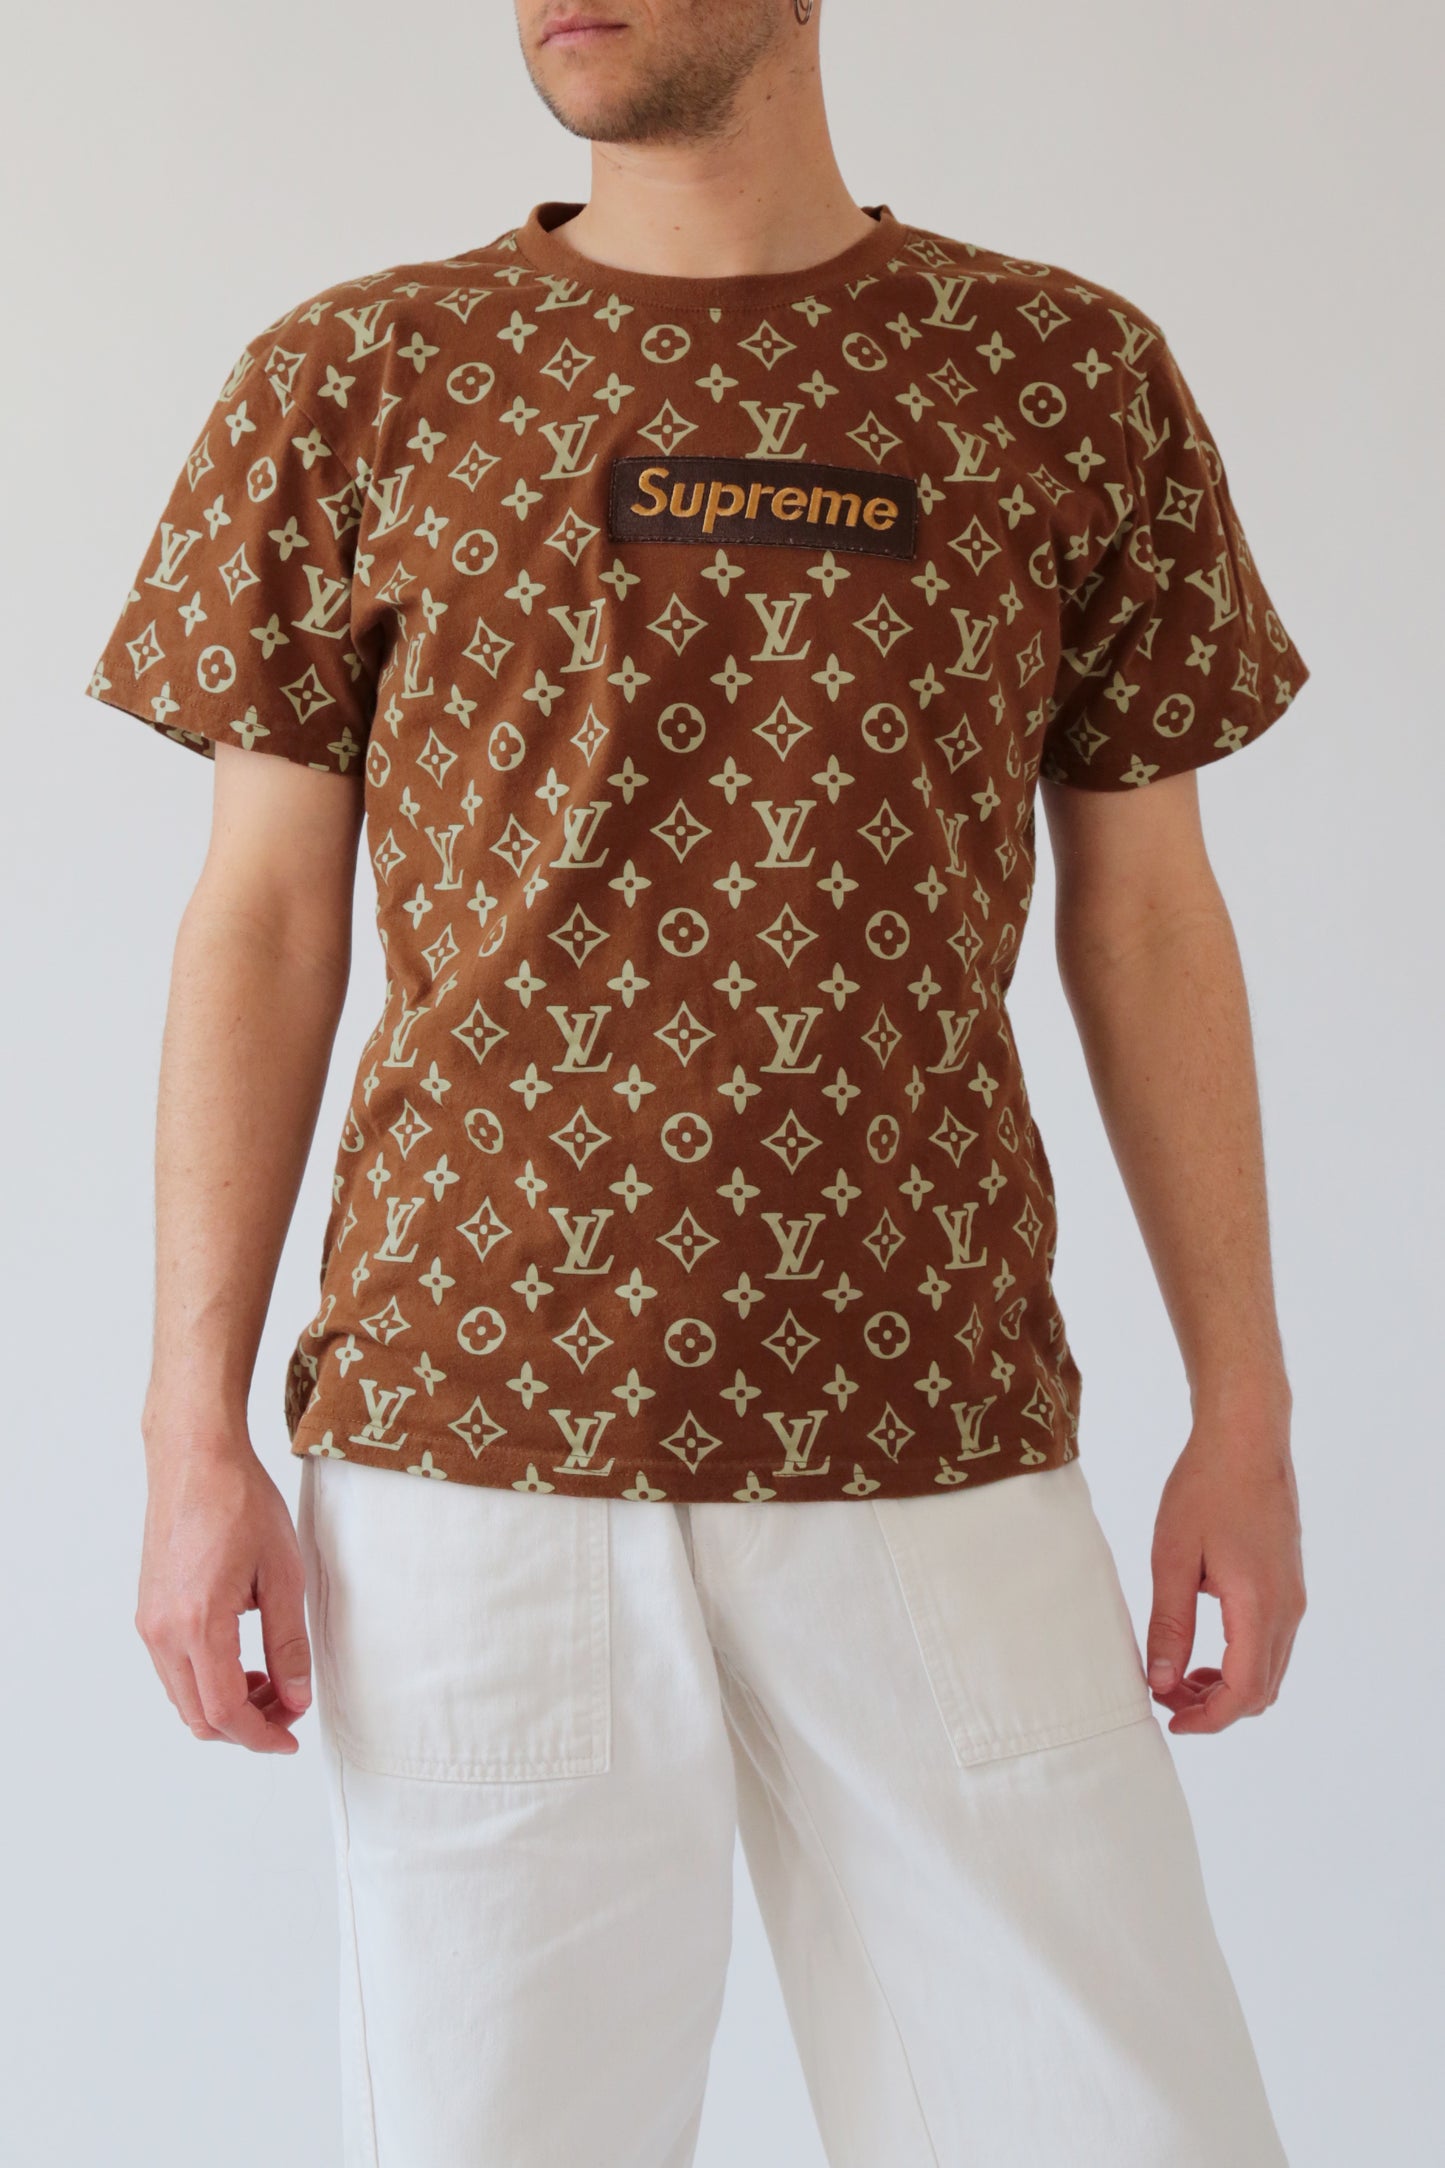 Louis Vuitton X Supreme T-shirt